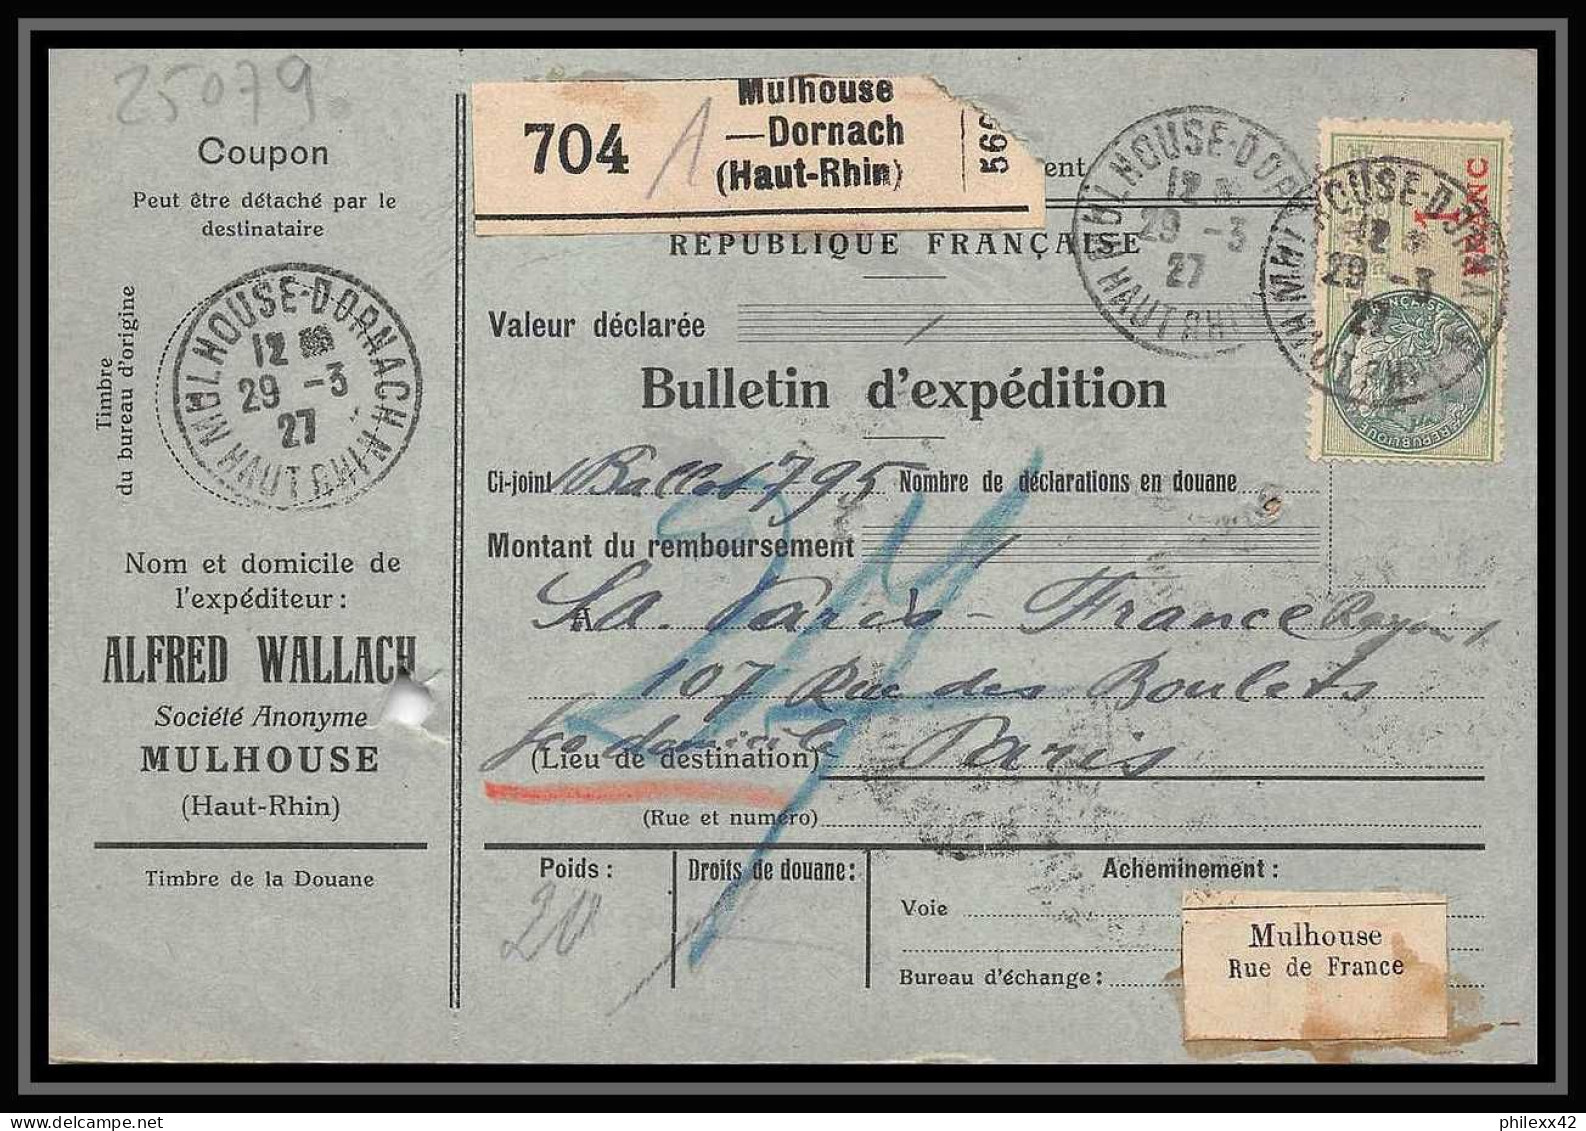 25079 Bulletin D'expédition France Colis Postaux Fiscal Haut Rhin - 1927 Mulhouse Merson 123+207 Alsace-Lorraine  - Storia Postale